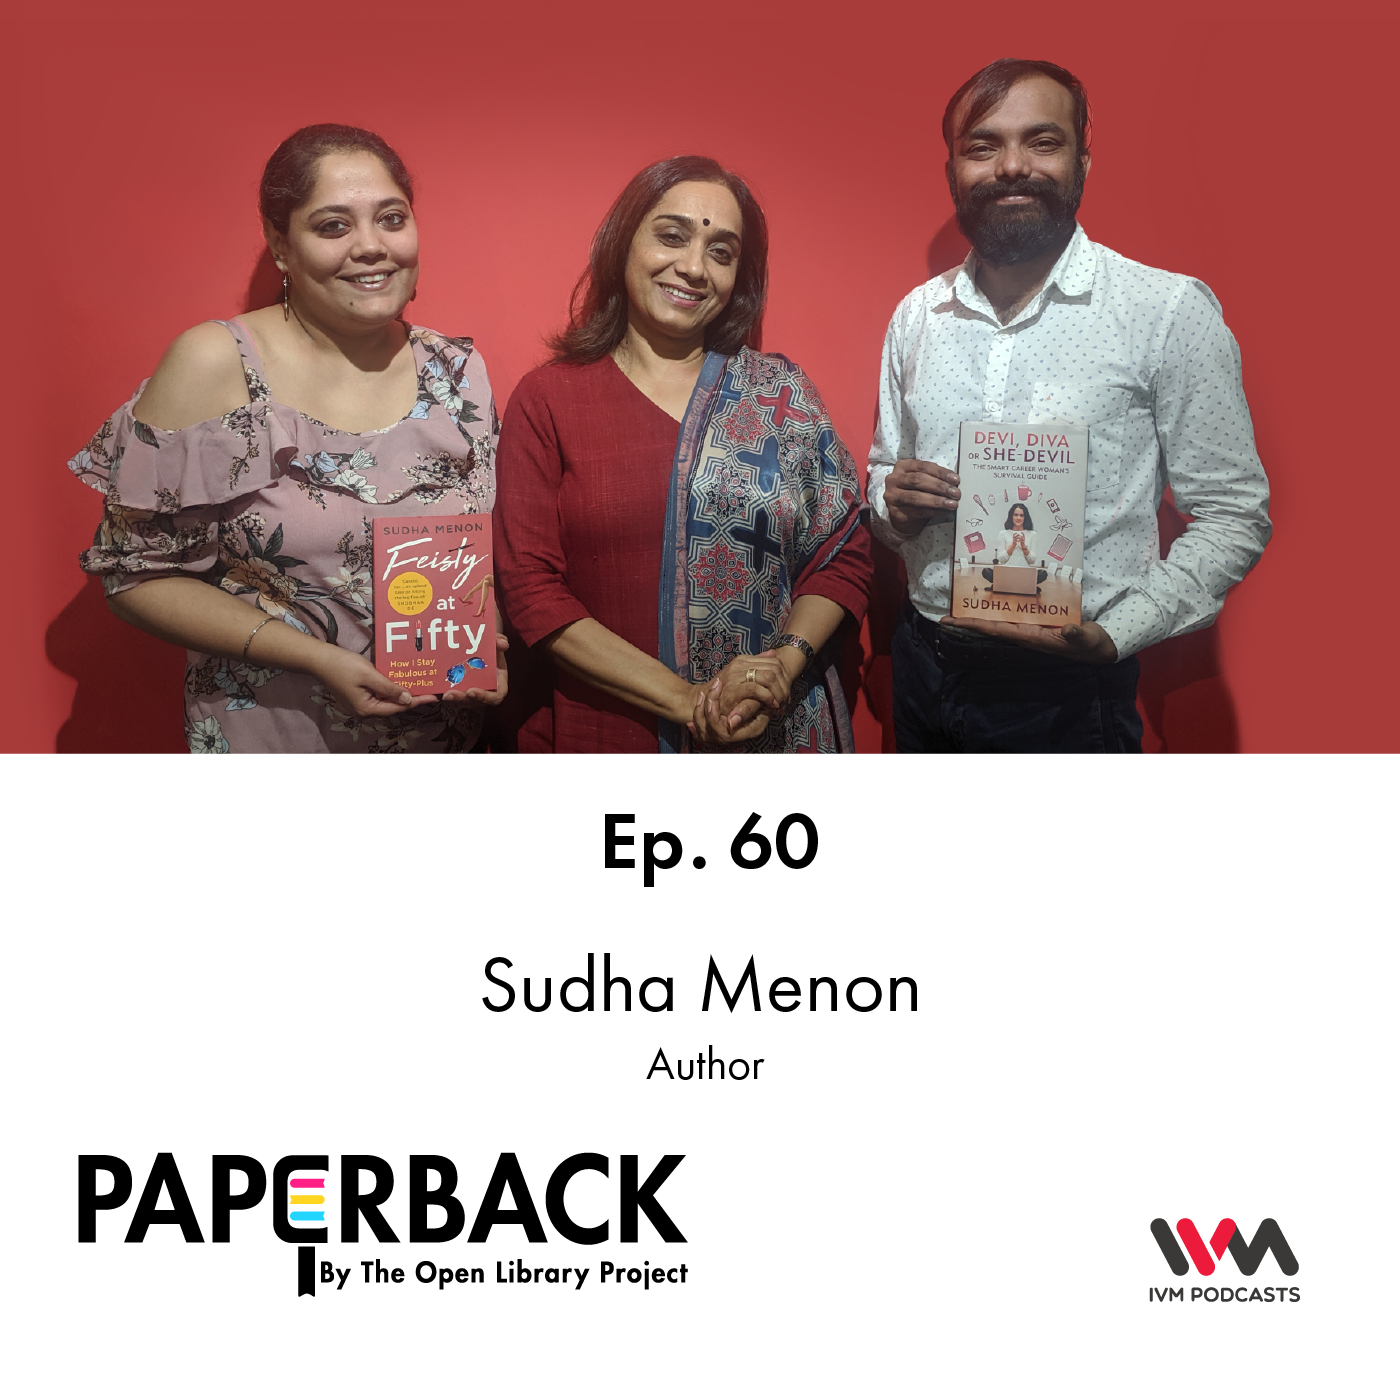 Ep. 60: Sudha Menon